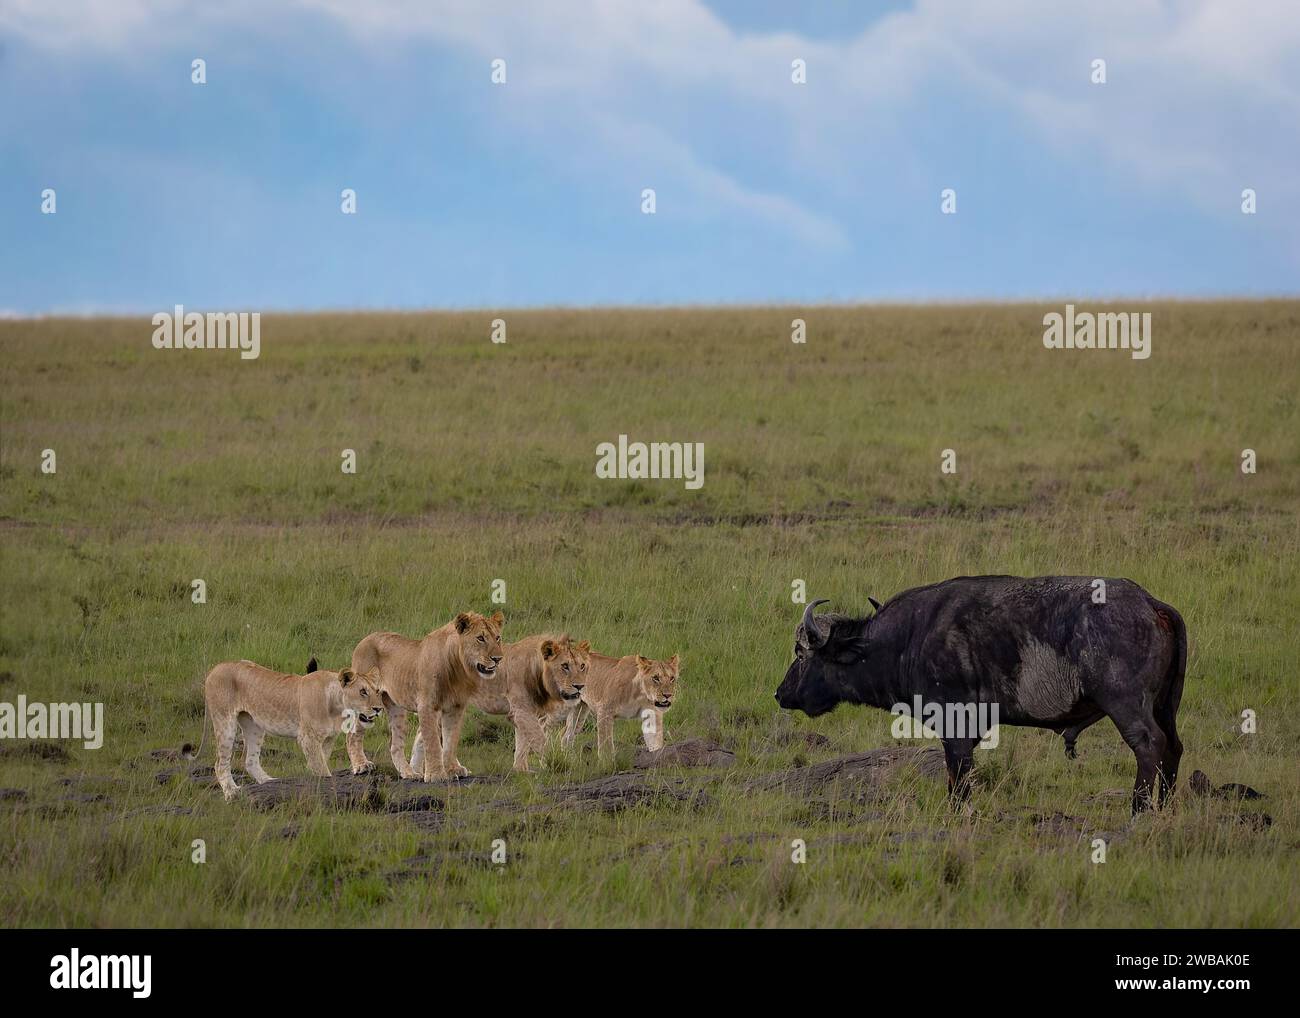 Eine Gruppe von vier jungen Löwen stellt sich mutig einem kolossalen Wasserbüffel in der Wildnis gegenüber. Stockfoto